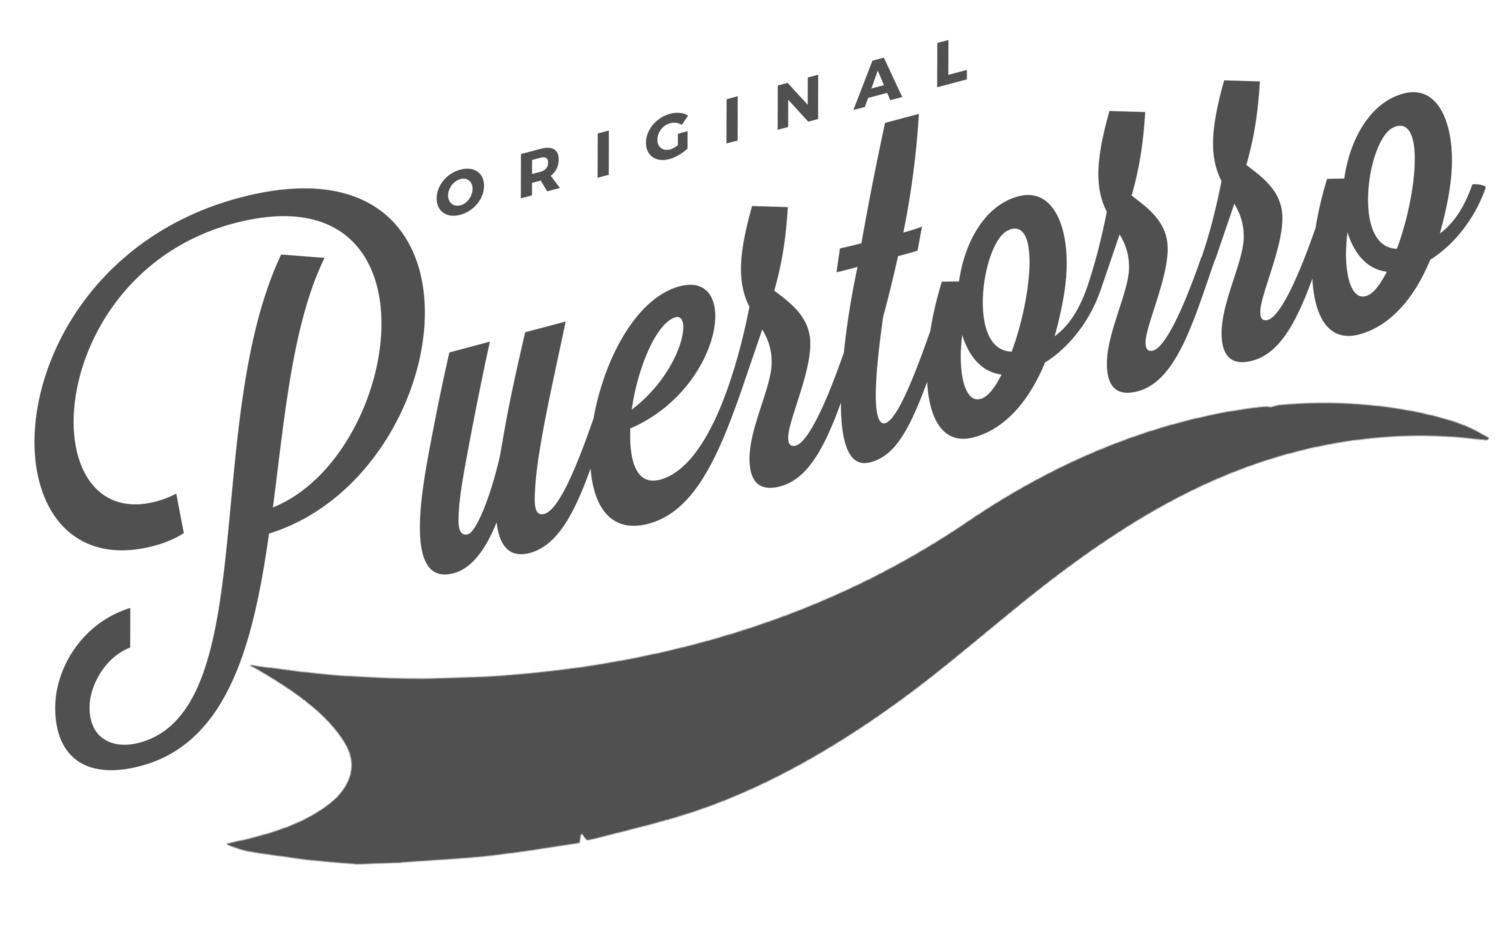 Original Puertorro